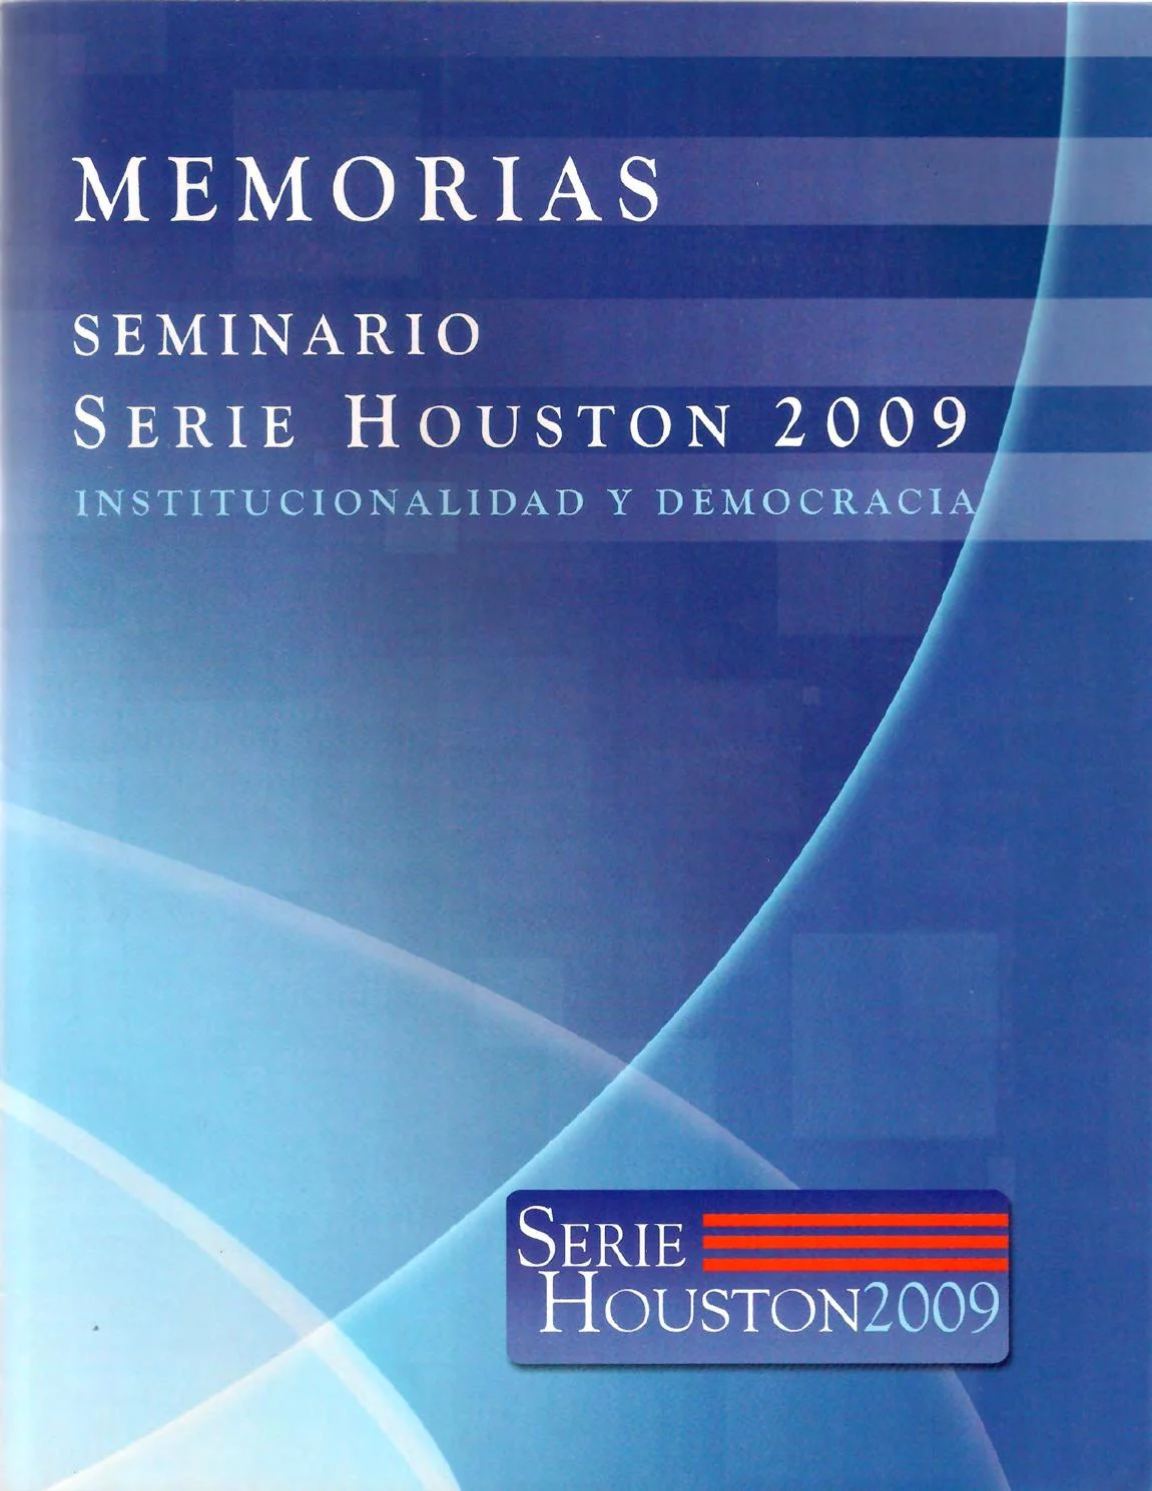 2009 Serie Houston 2009 Institucionalidad y democracia